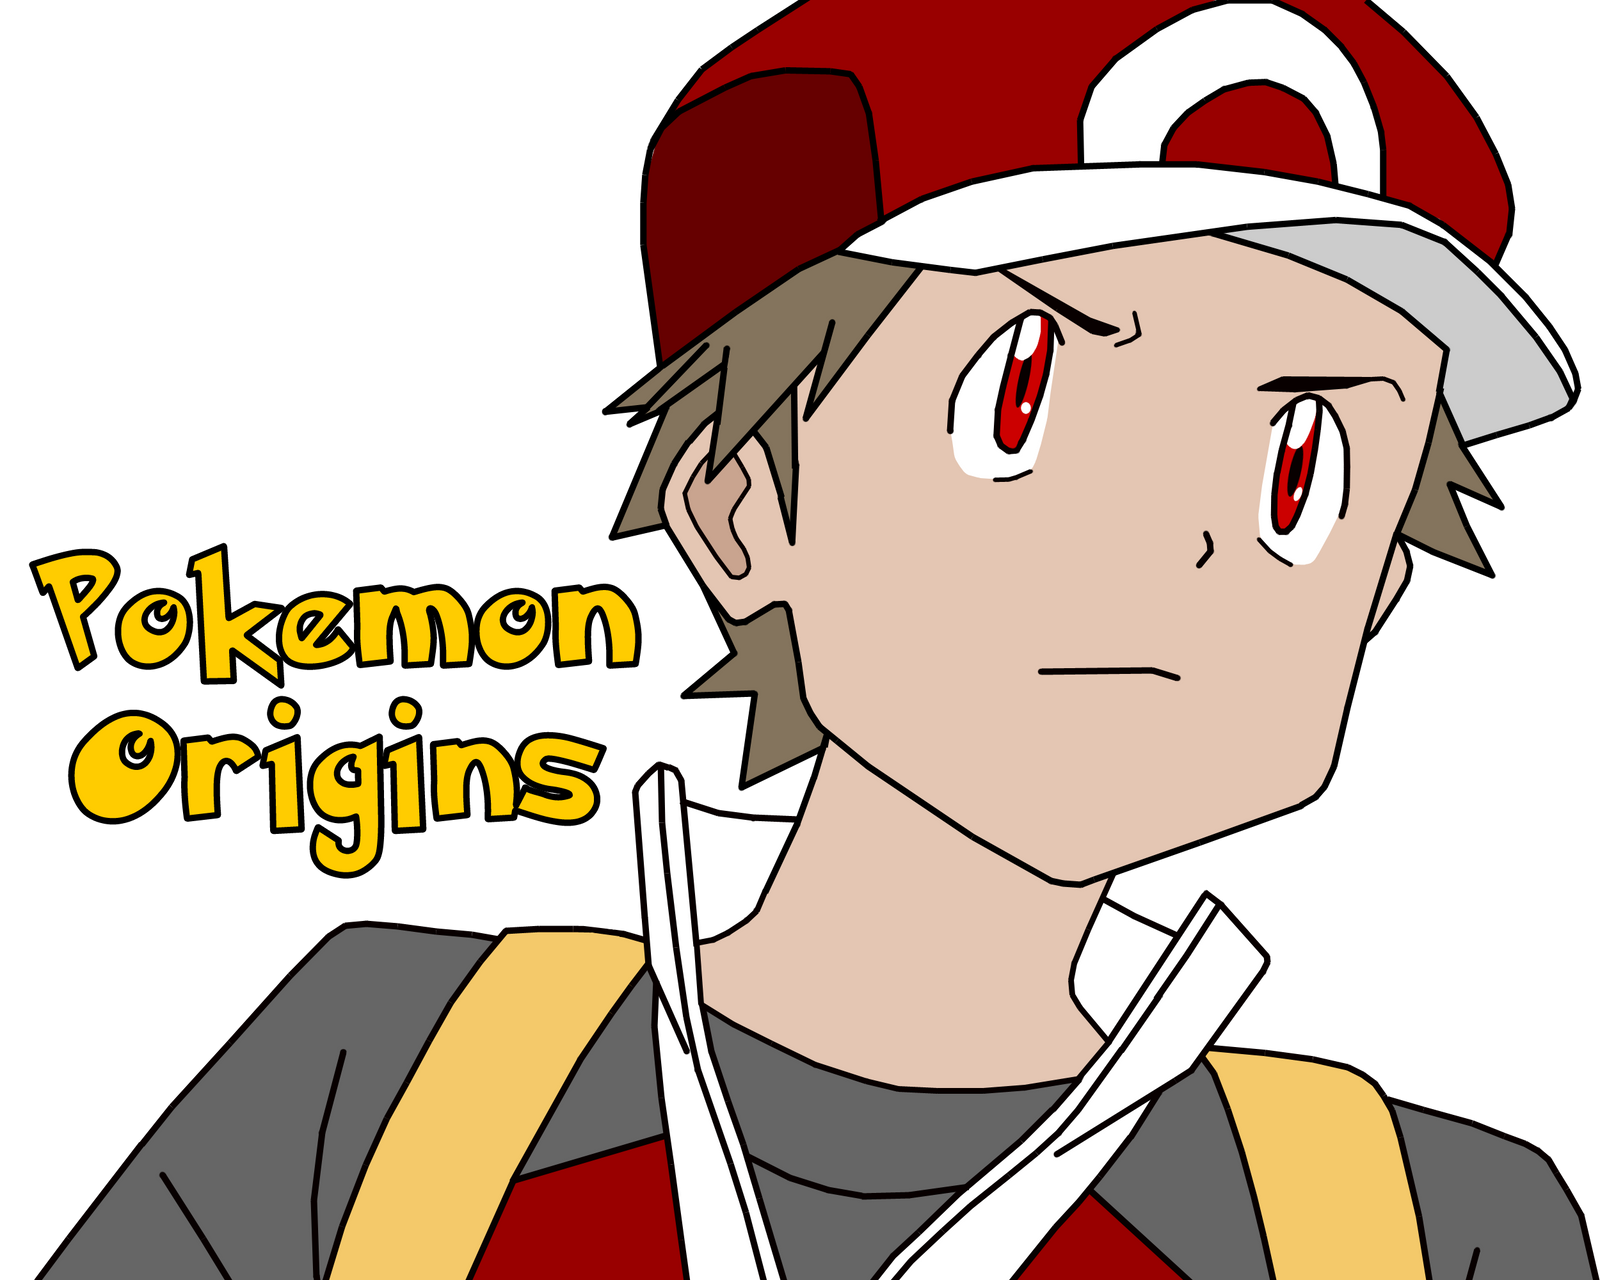 Novos detalhes de Pokémon Origins